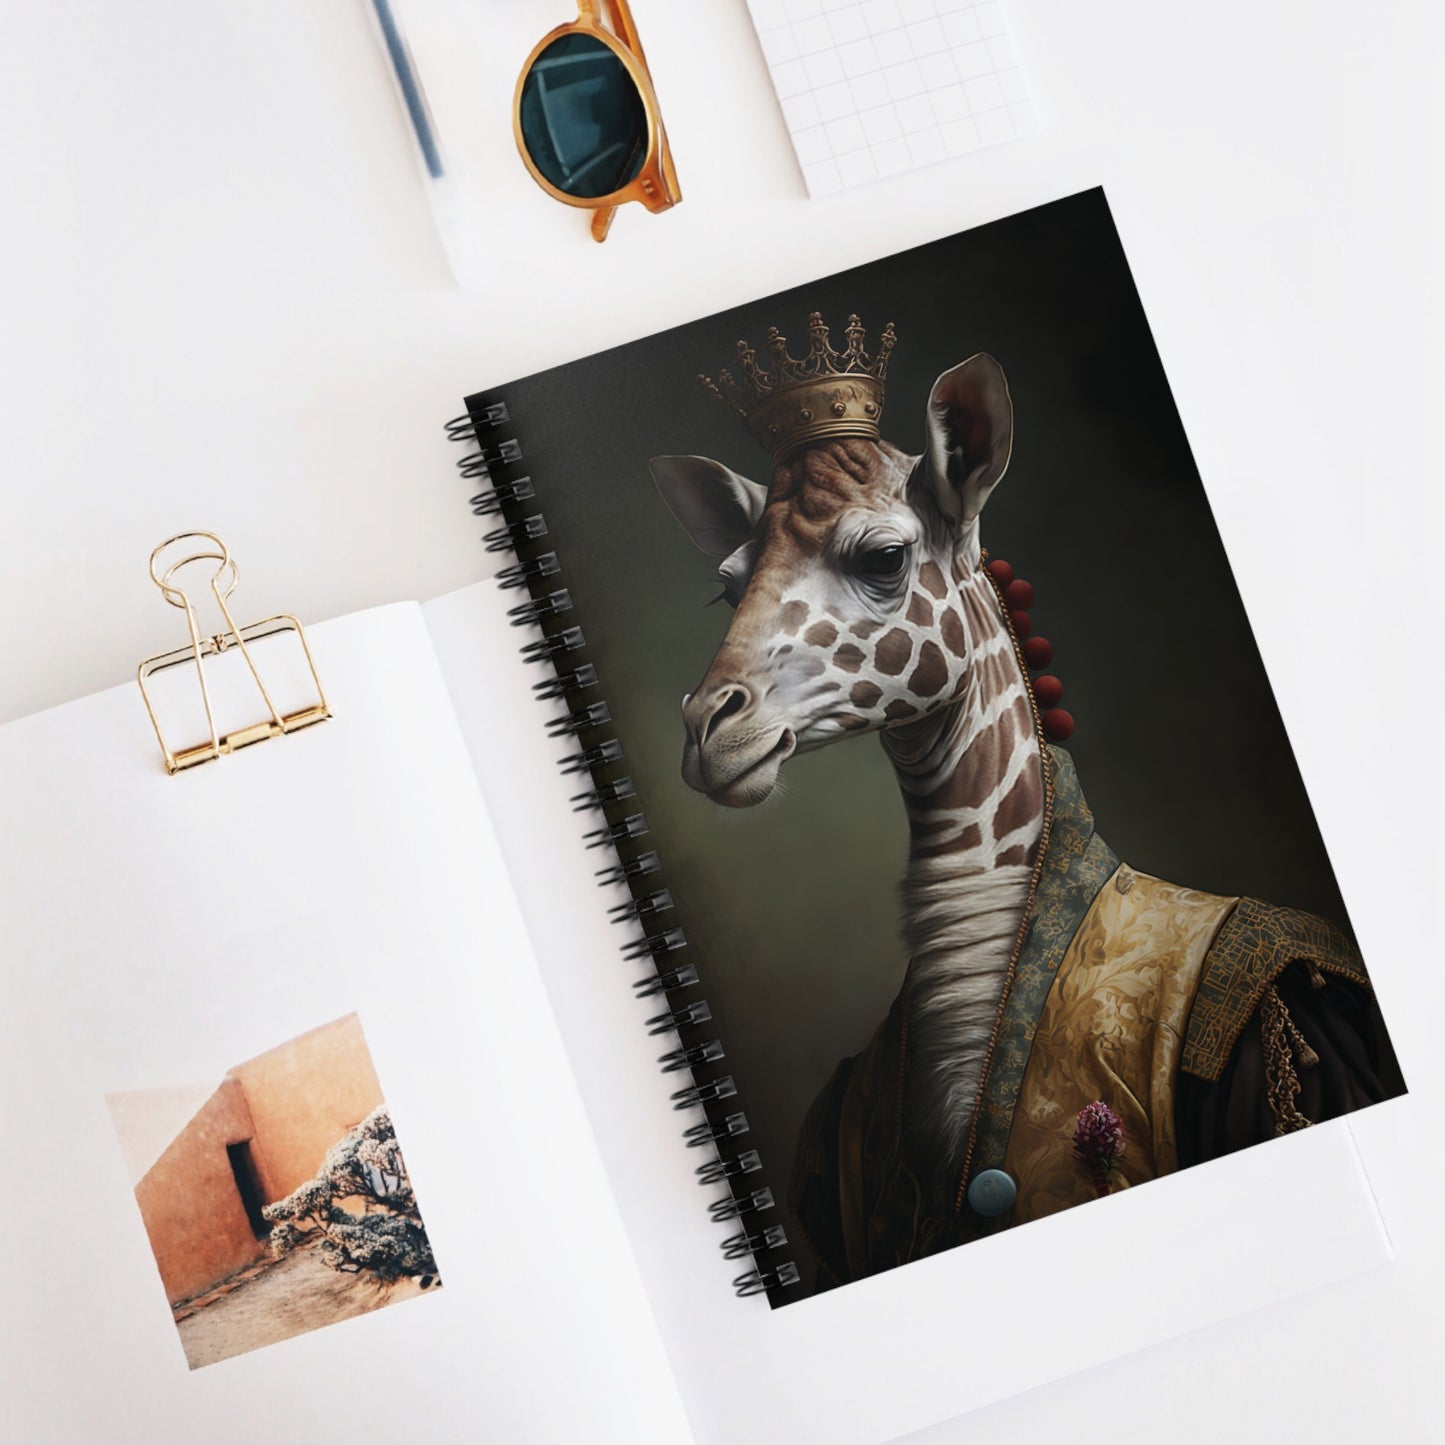 Giraffe Aristocrat | Spiral Notebook - Ruled Line